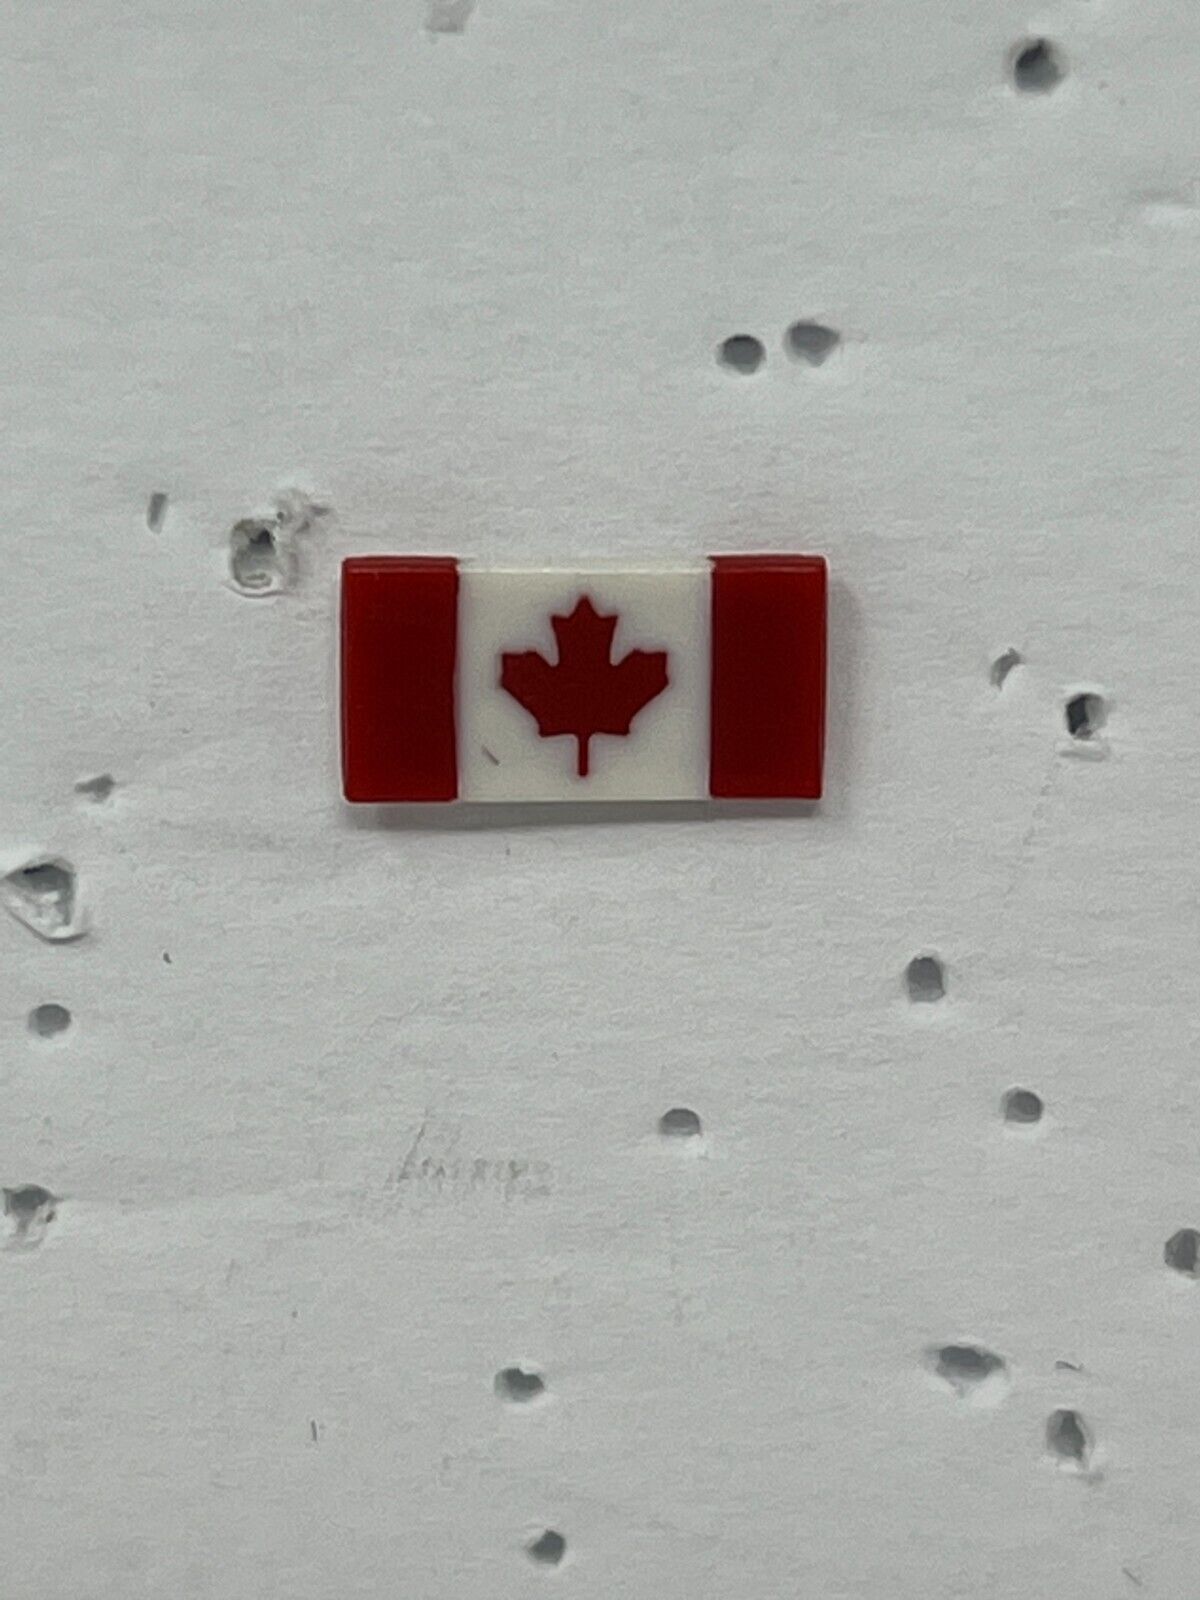 Canada Flag Patriotic Lapel Pin P2